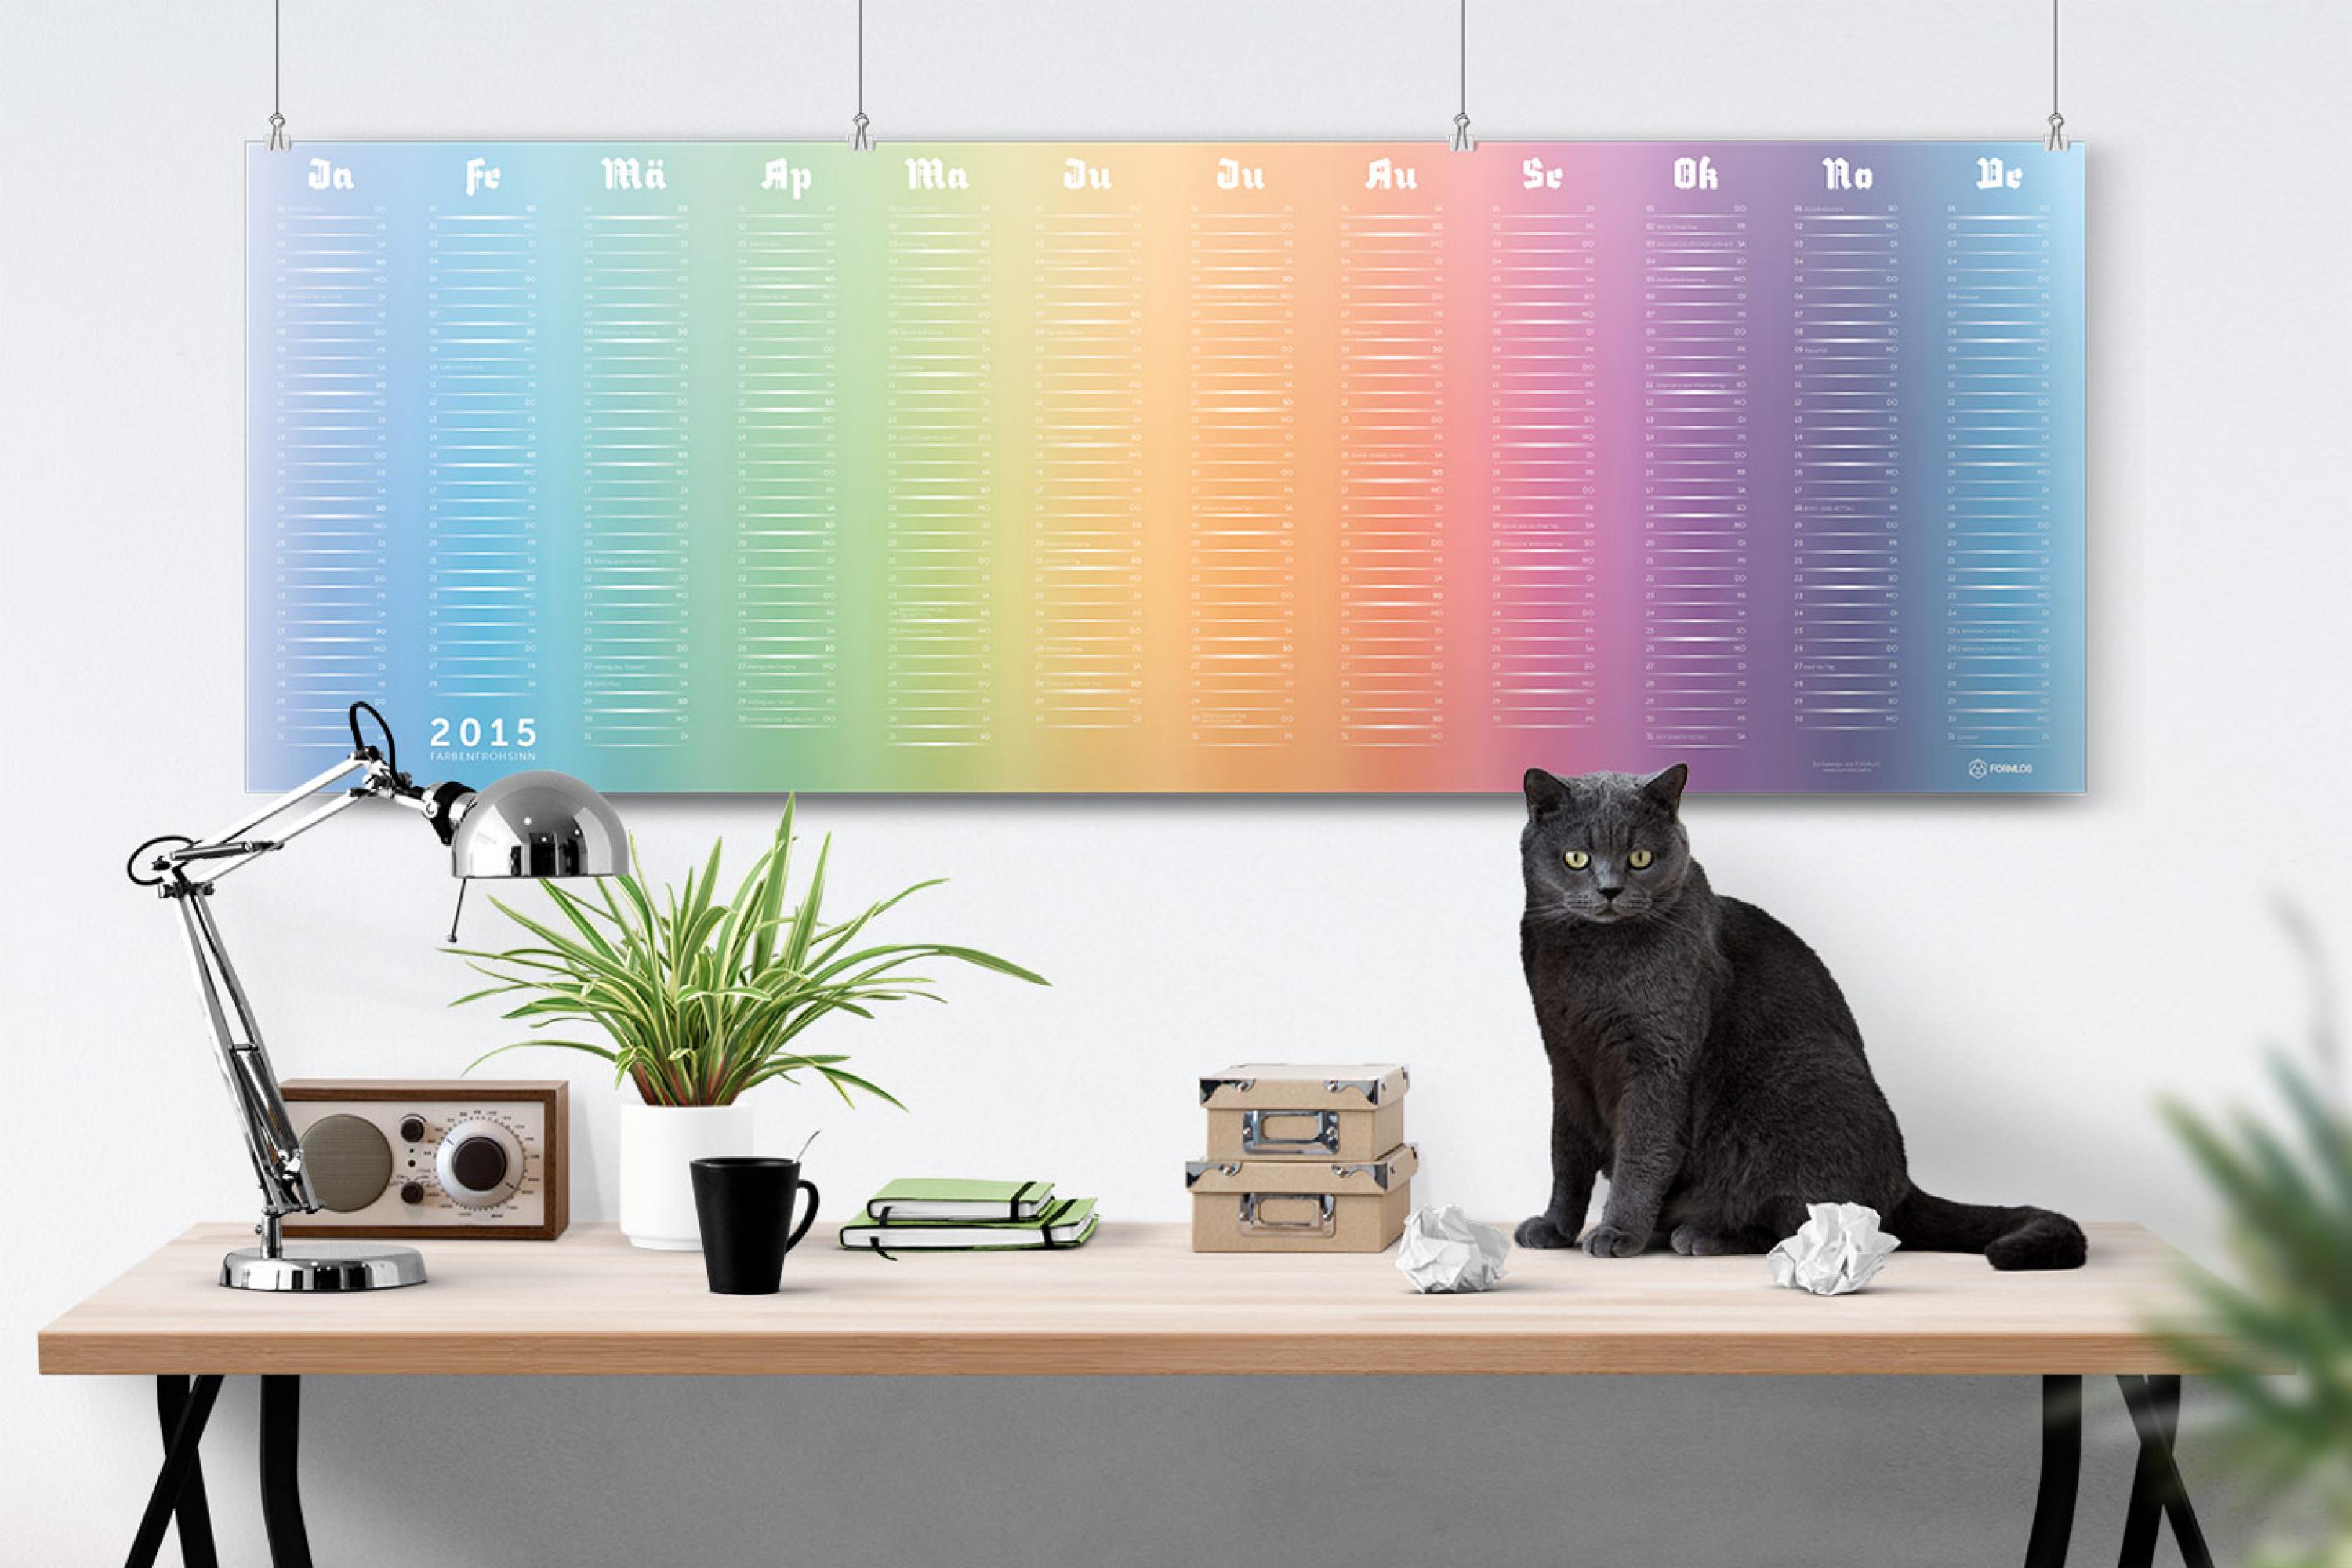 kalender-2015-farbenfrohsinn-mockup